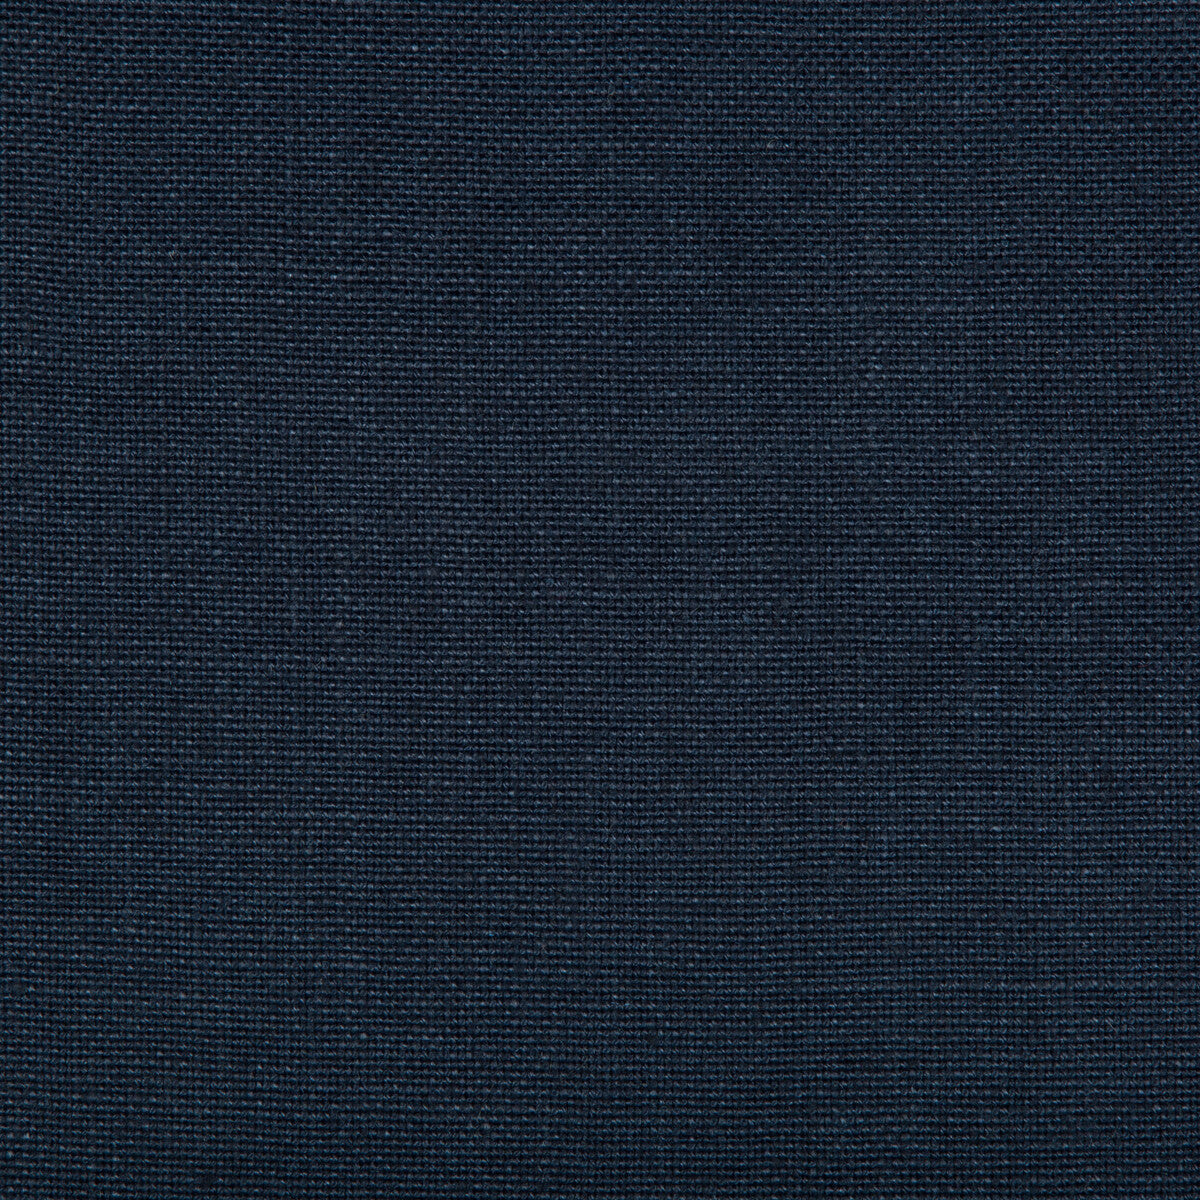 Kravet Basics fabric in 35342-50 color - pattern 35342.50.0 - by Kravet Basics